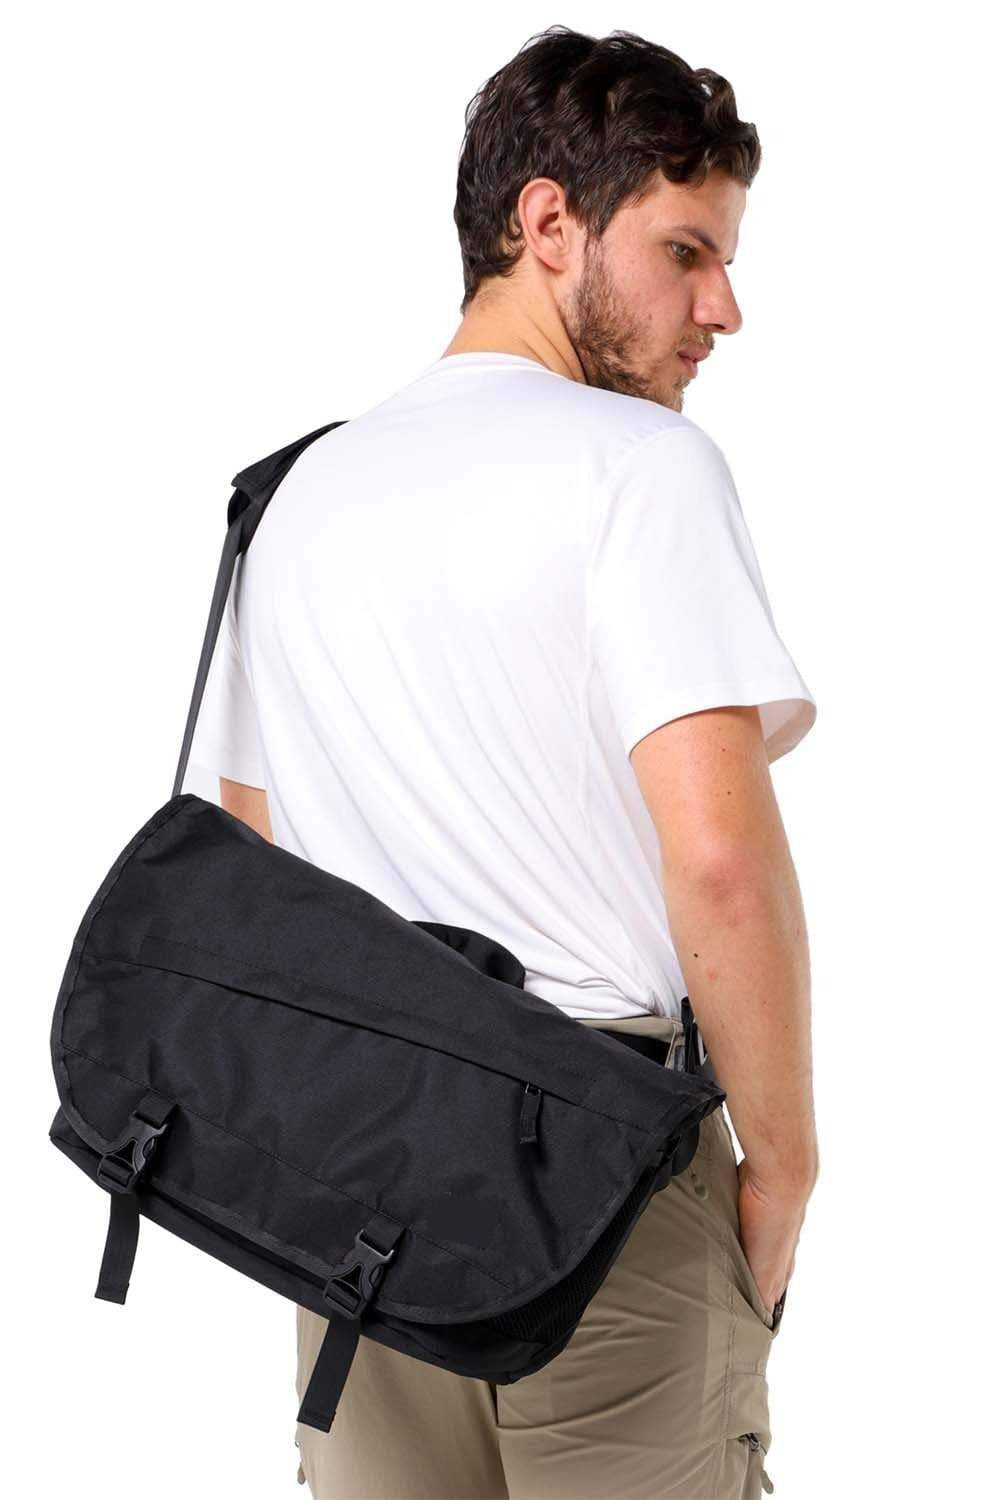 MIERSPORT Nylon Messenger Bag Men School Satchel Shoulder Bag